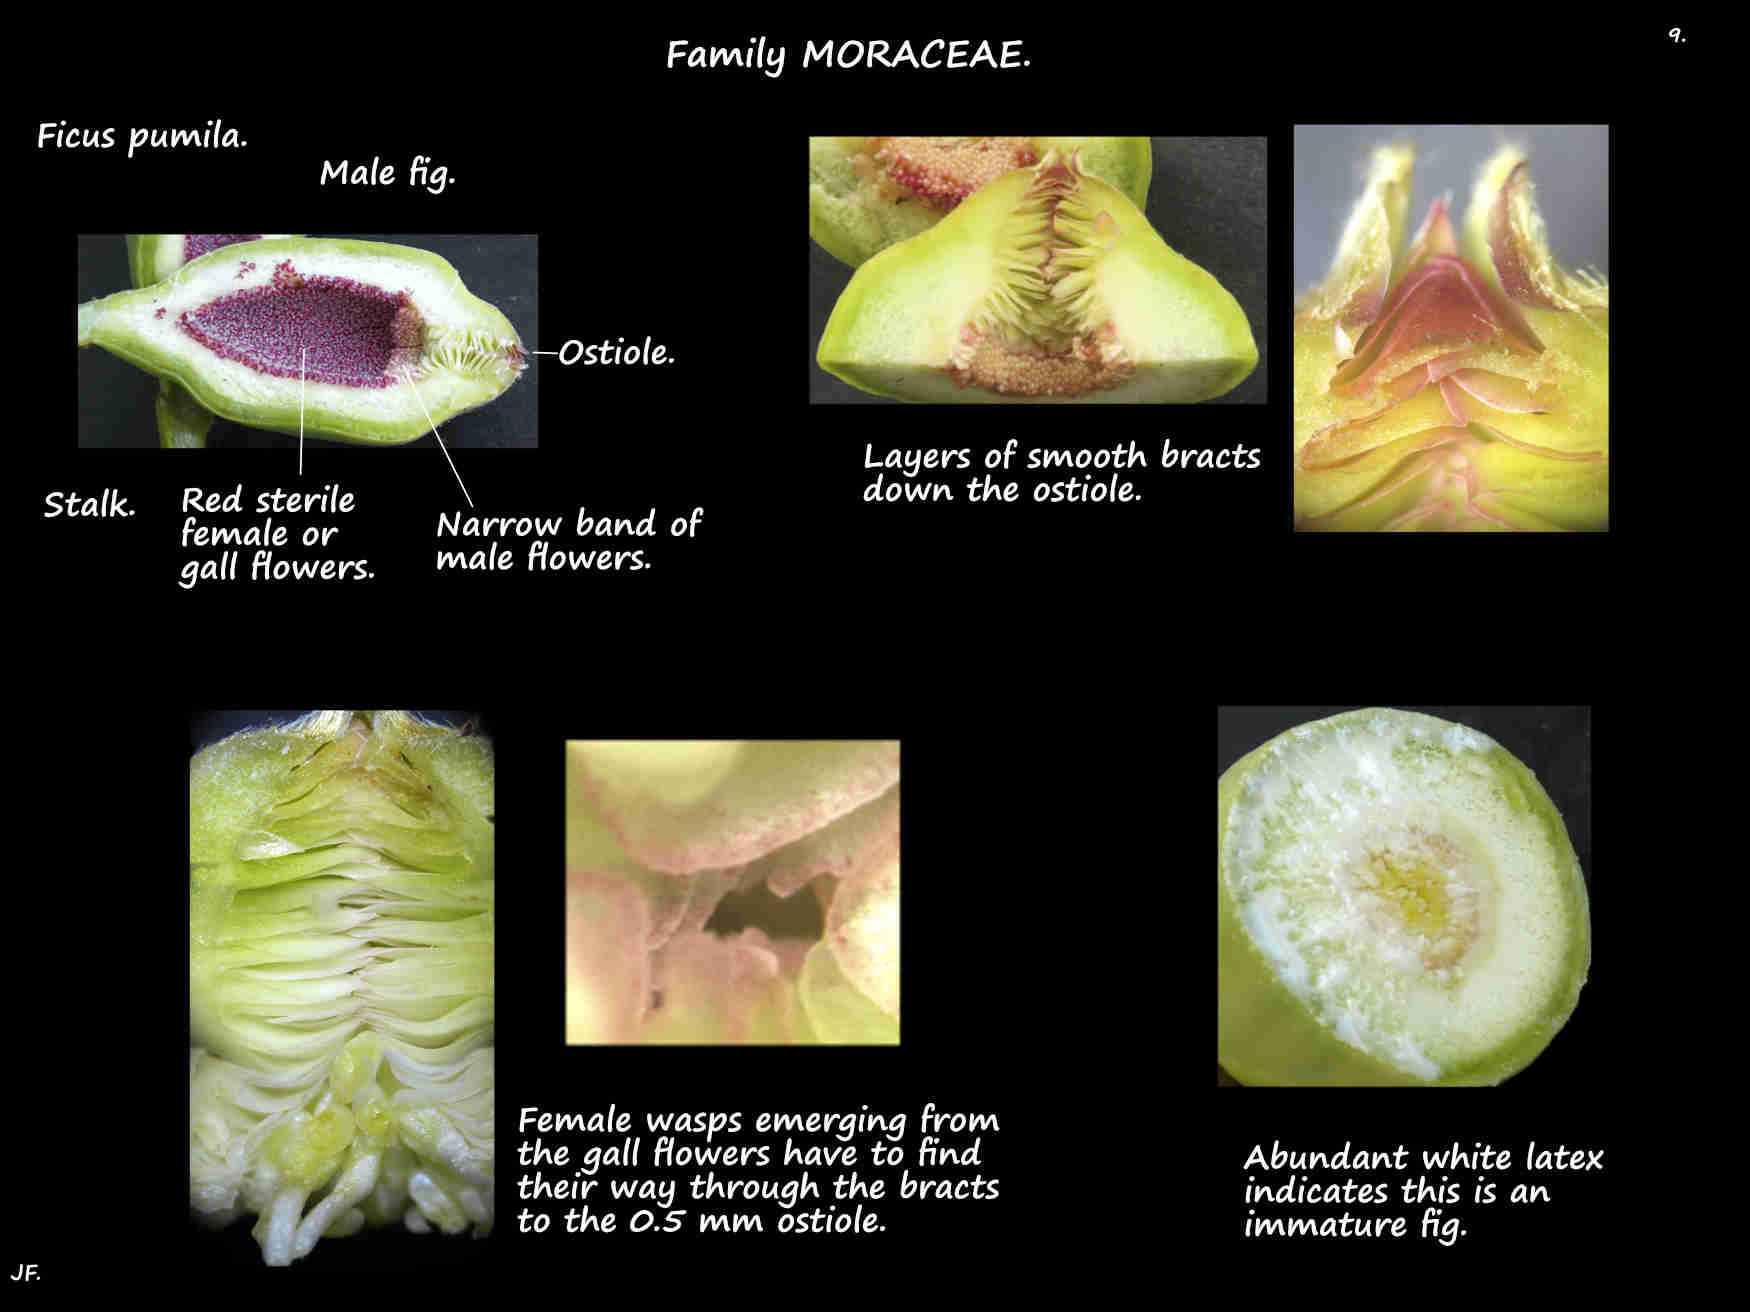 9 Immature male Ficus pumila fig